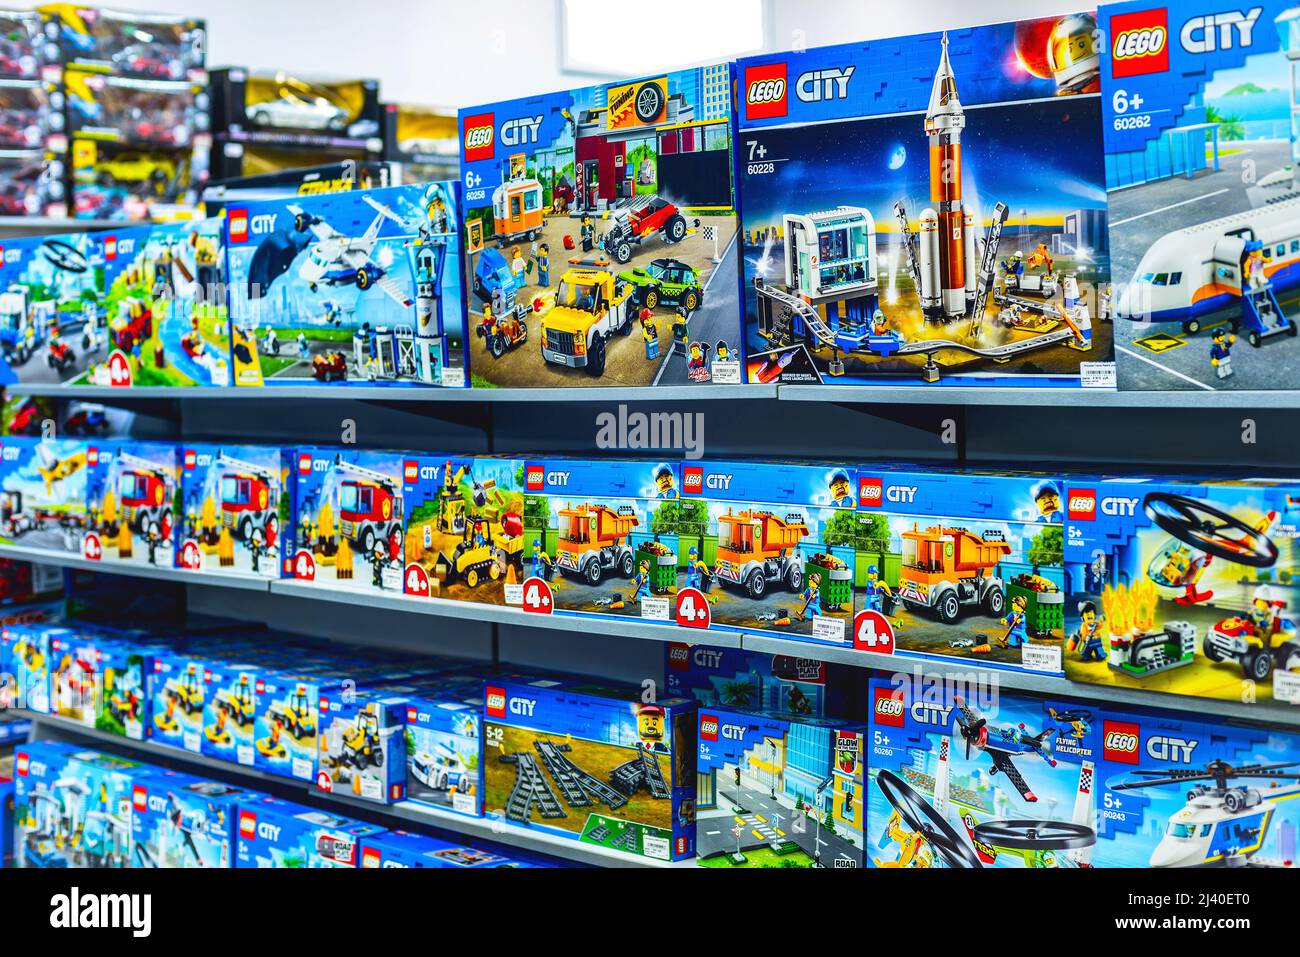 2021: Rayonnages avec les constructeurs Lego de la série City Banque D'Images